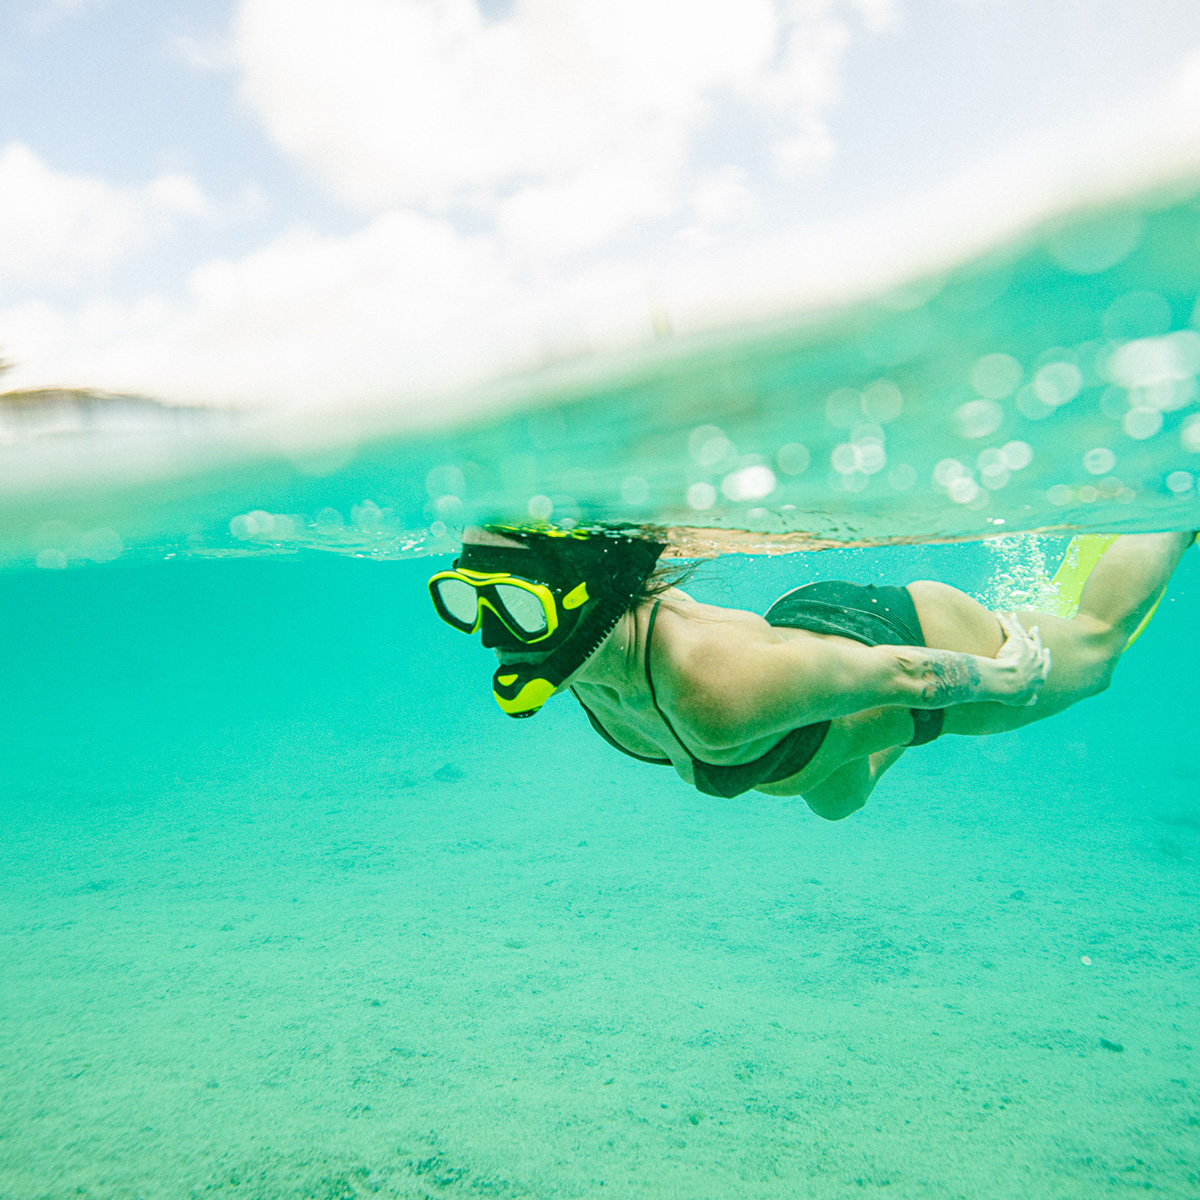 Onderwateropname van een vrouw die aan het snorkelen is